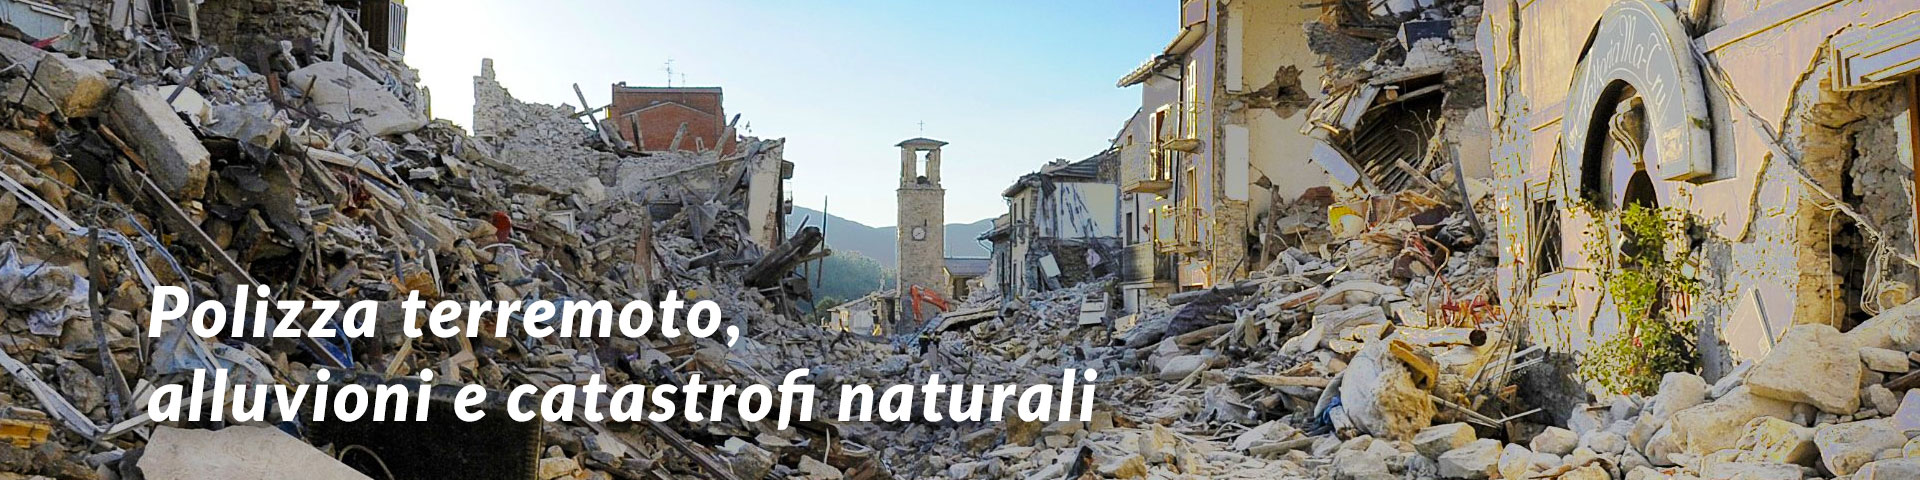 Terremoto e Catastrofi naturali